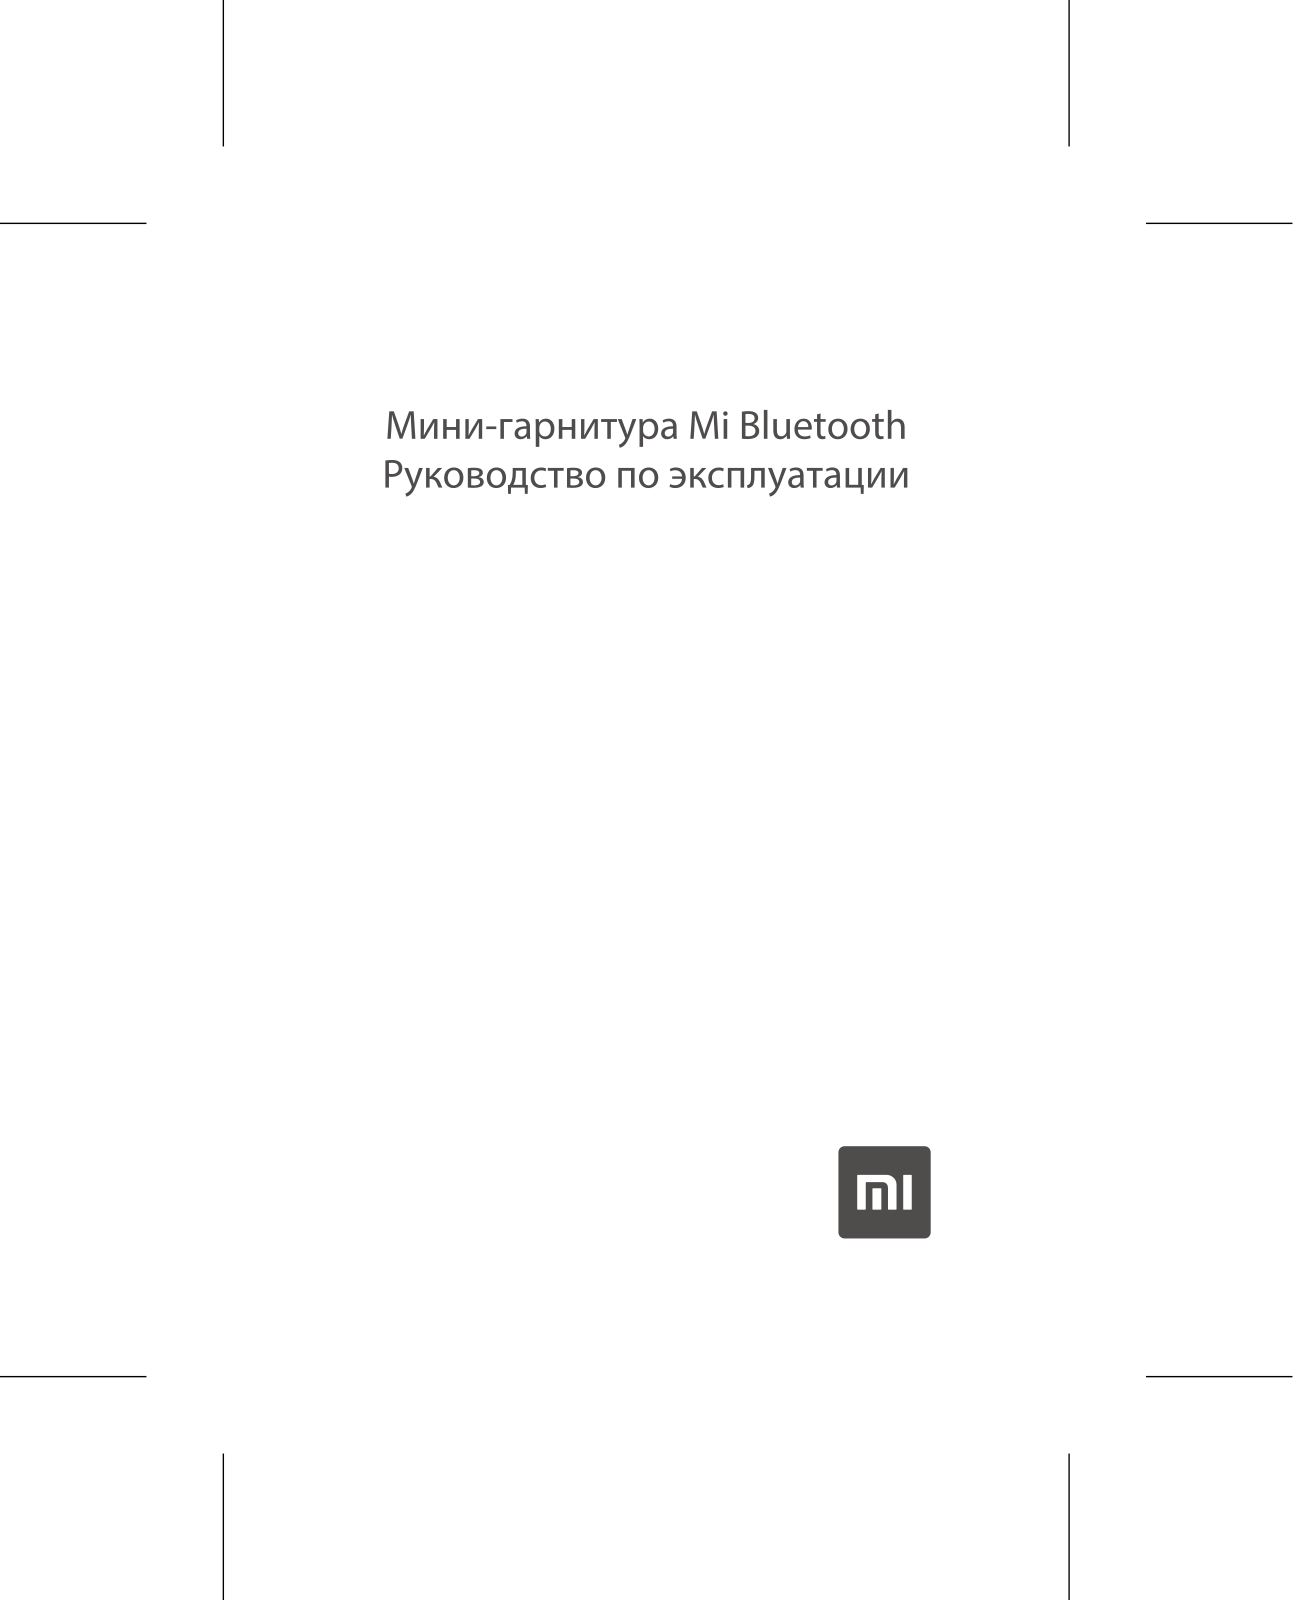 Xiaomi Mi BT Headset mini User Manual